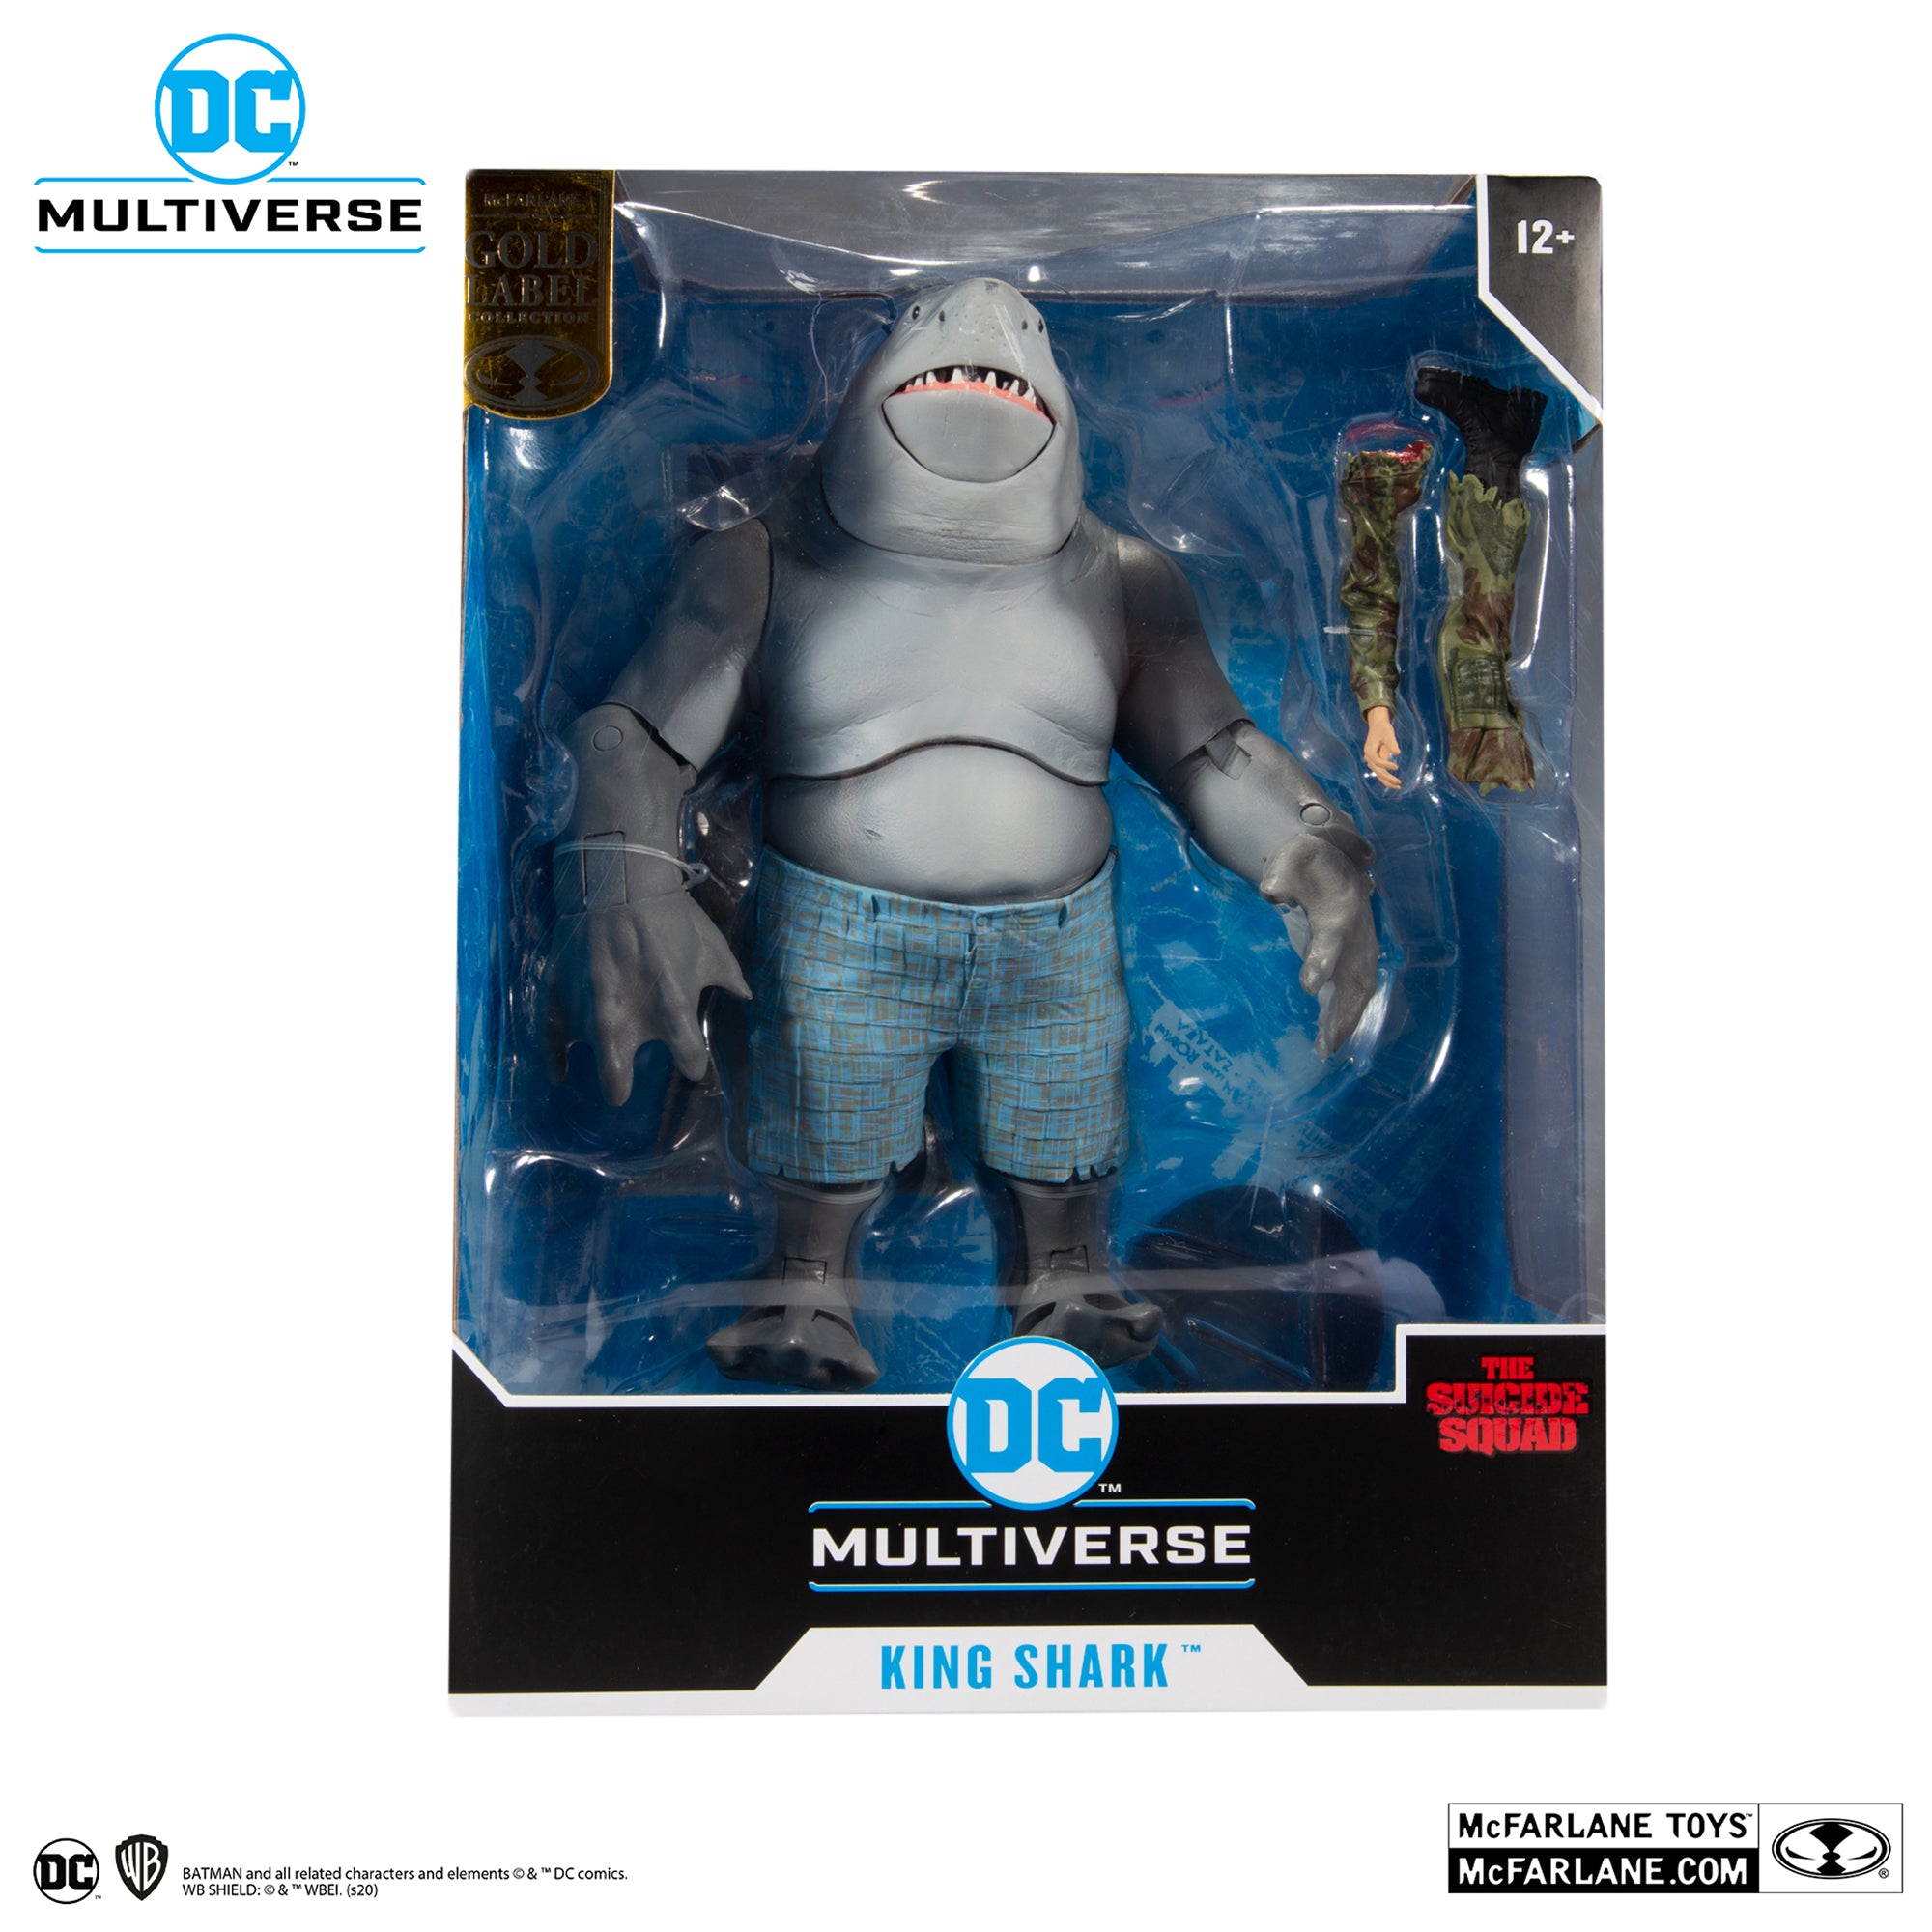 DC Multiverse Suicide Squad King Shark Gold Edition Megafig - McFarlane Toys-2